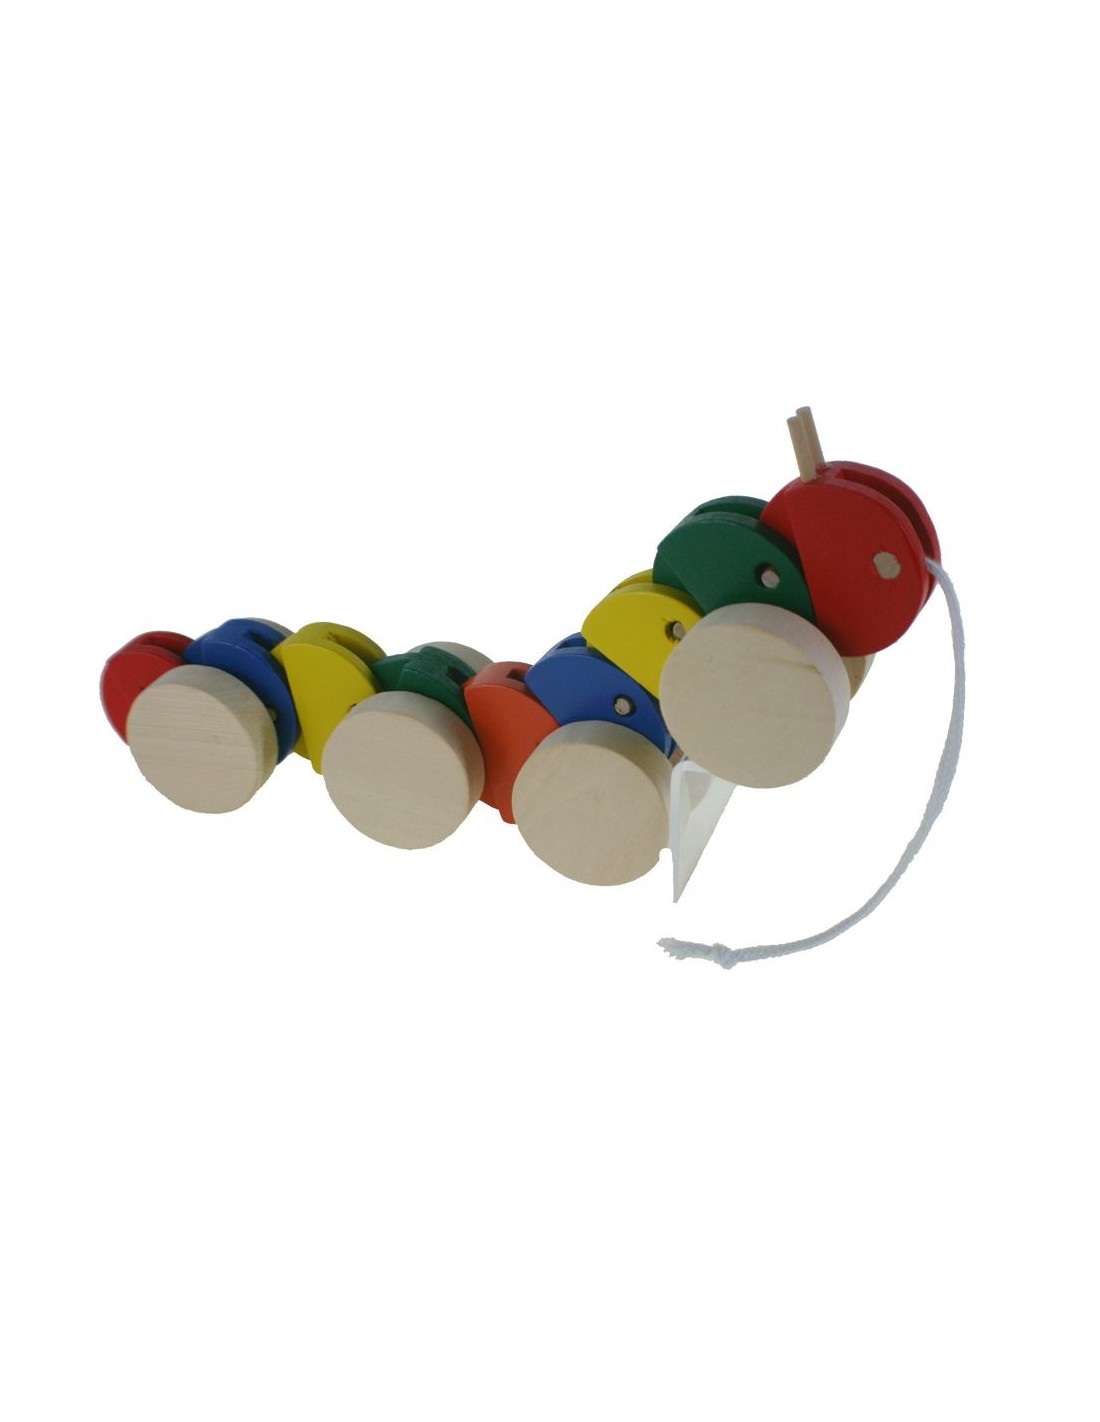 Juguete arrastre madera forma de gusano juego de cuerda para niños y niñas